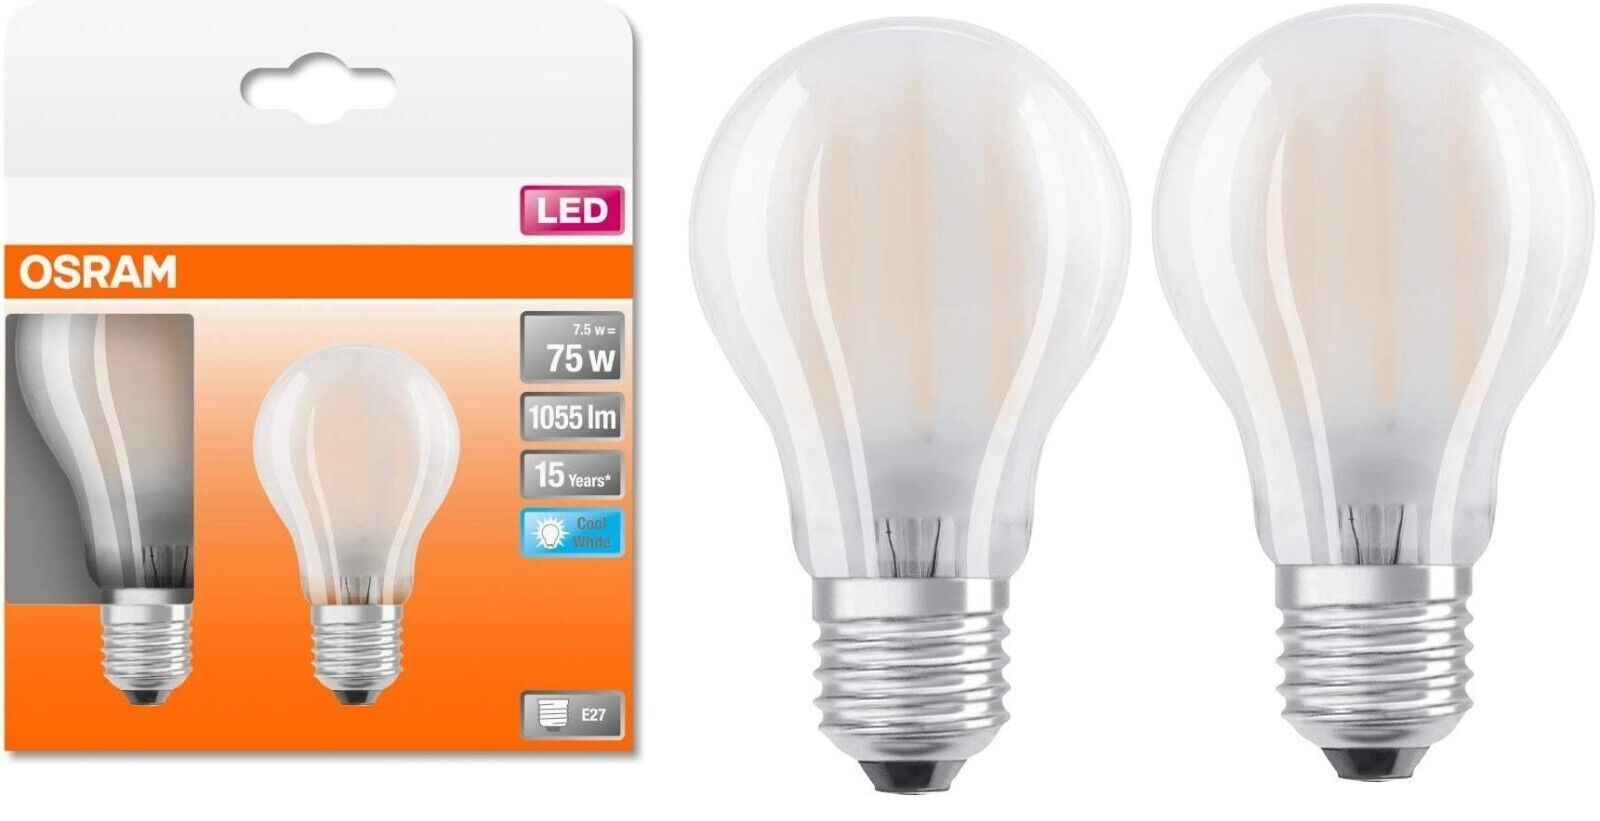  OSRAM E27 LED Lampe Glühbirne Leuchtmittel Kaltweiß 7.5W [2ER]